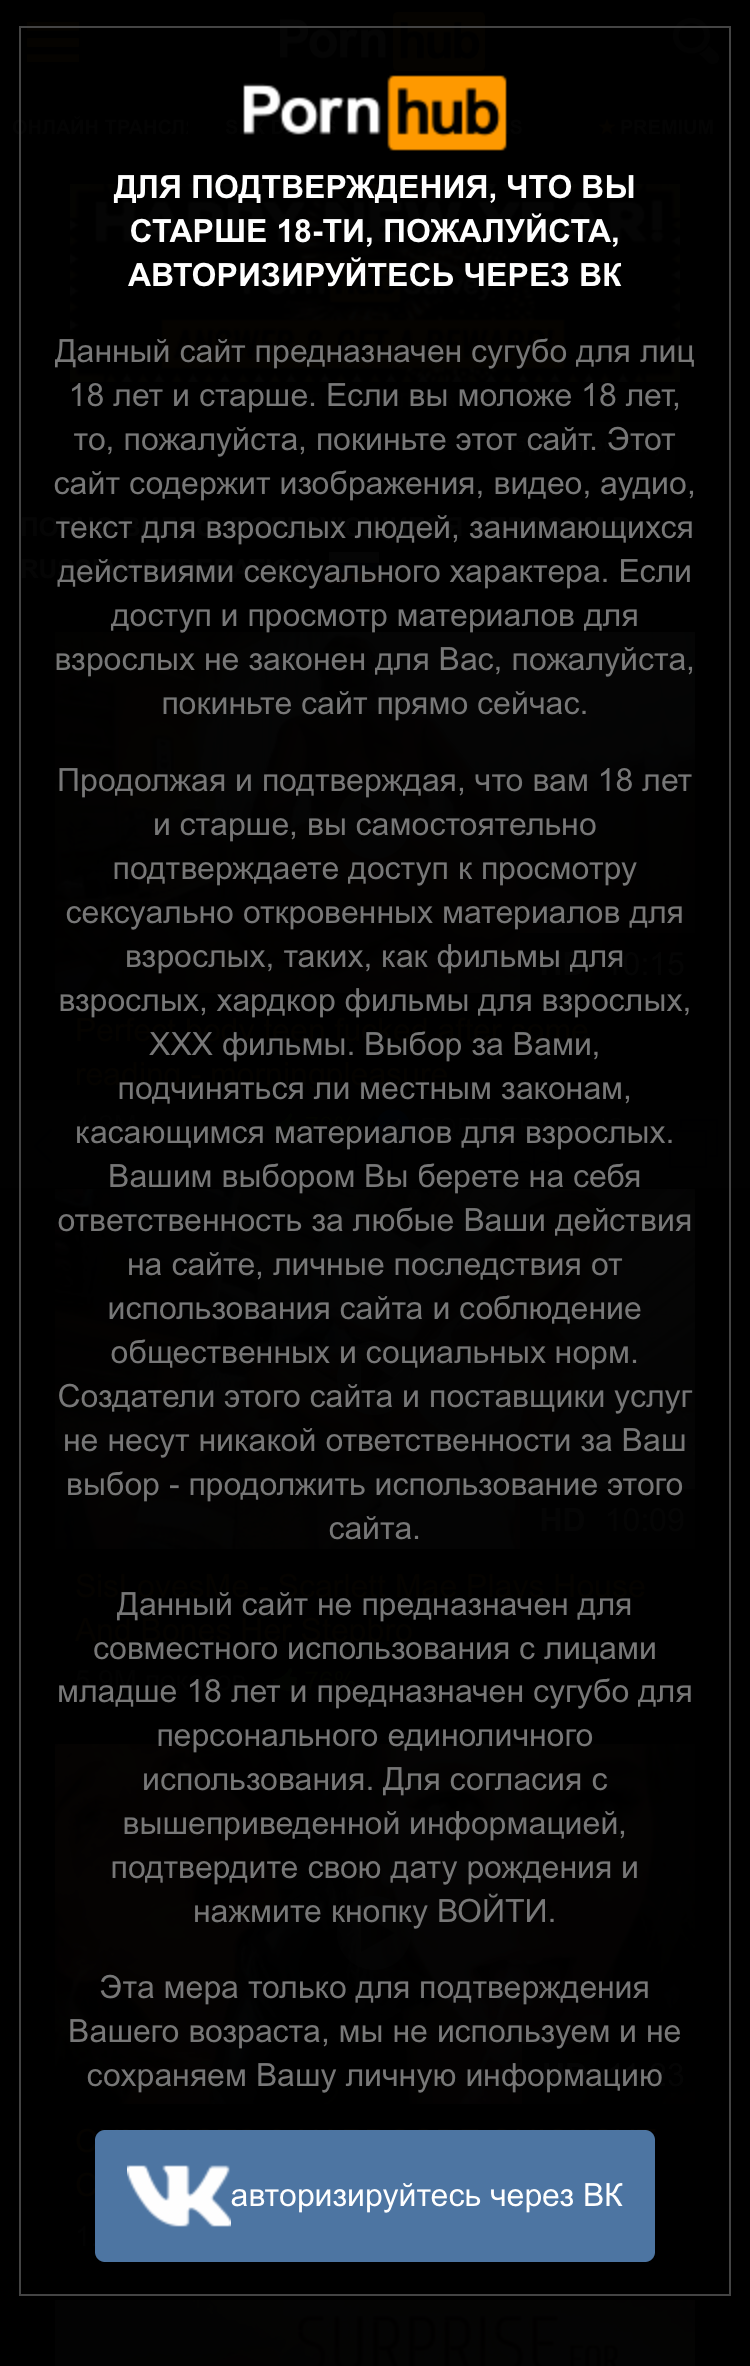 Для доступа на сайт нужно авторизоваться через Вконтакте. Это способ подтвердить, что вам есть 18 лет